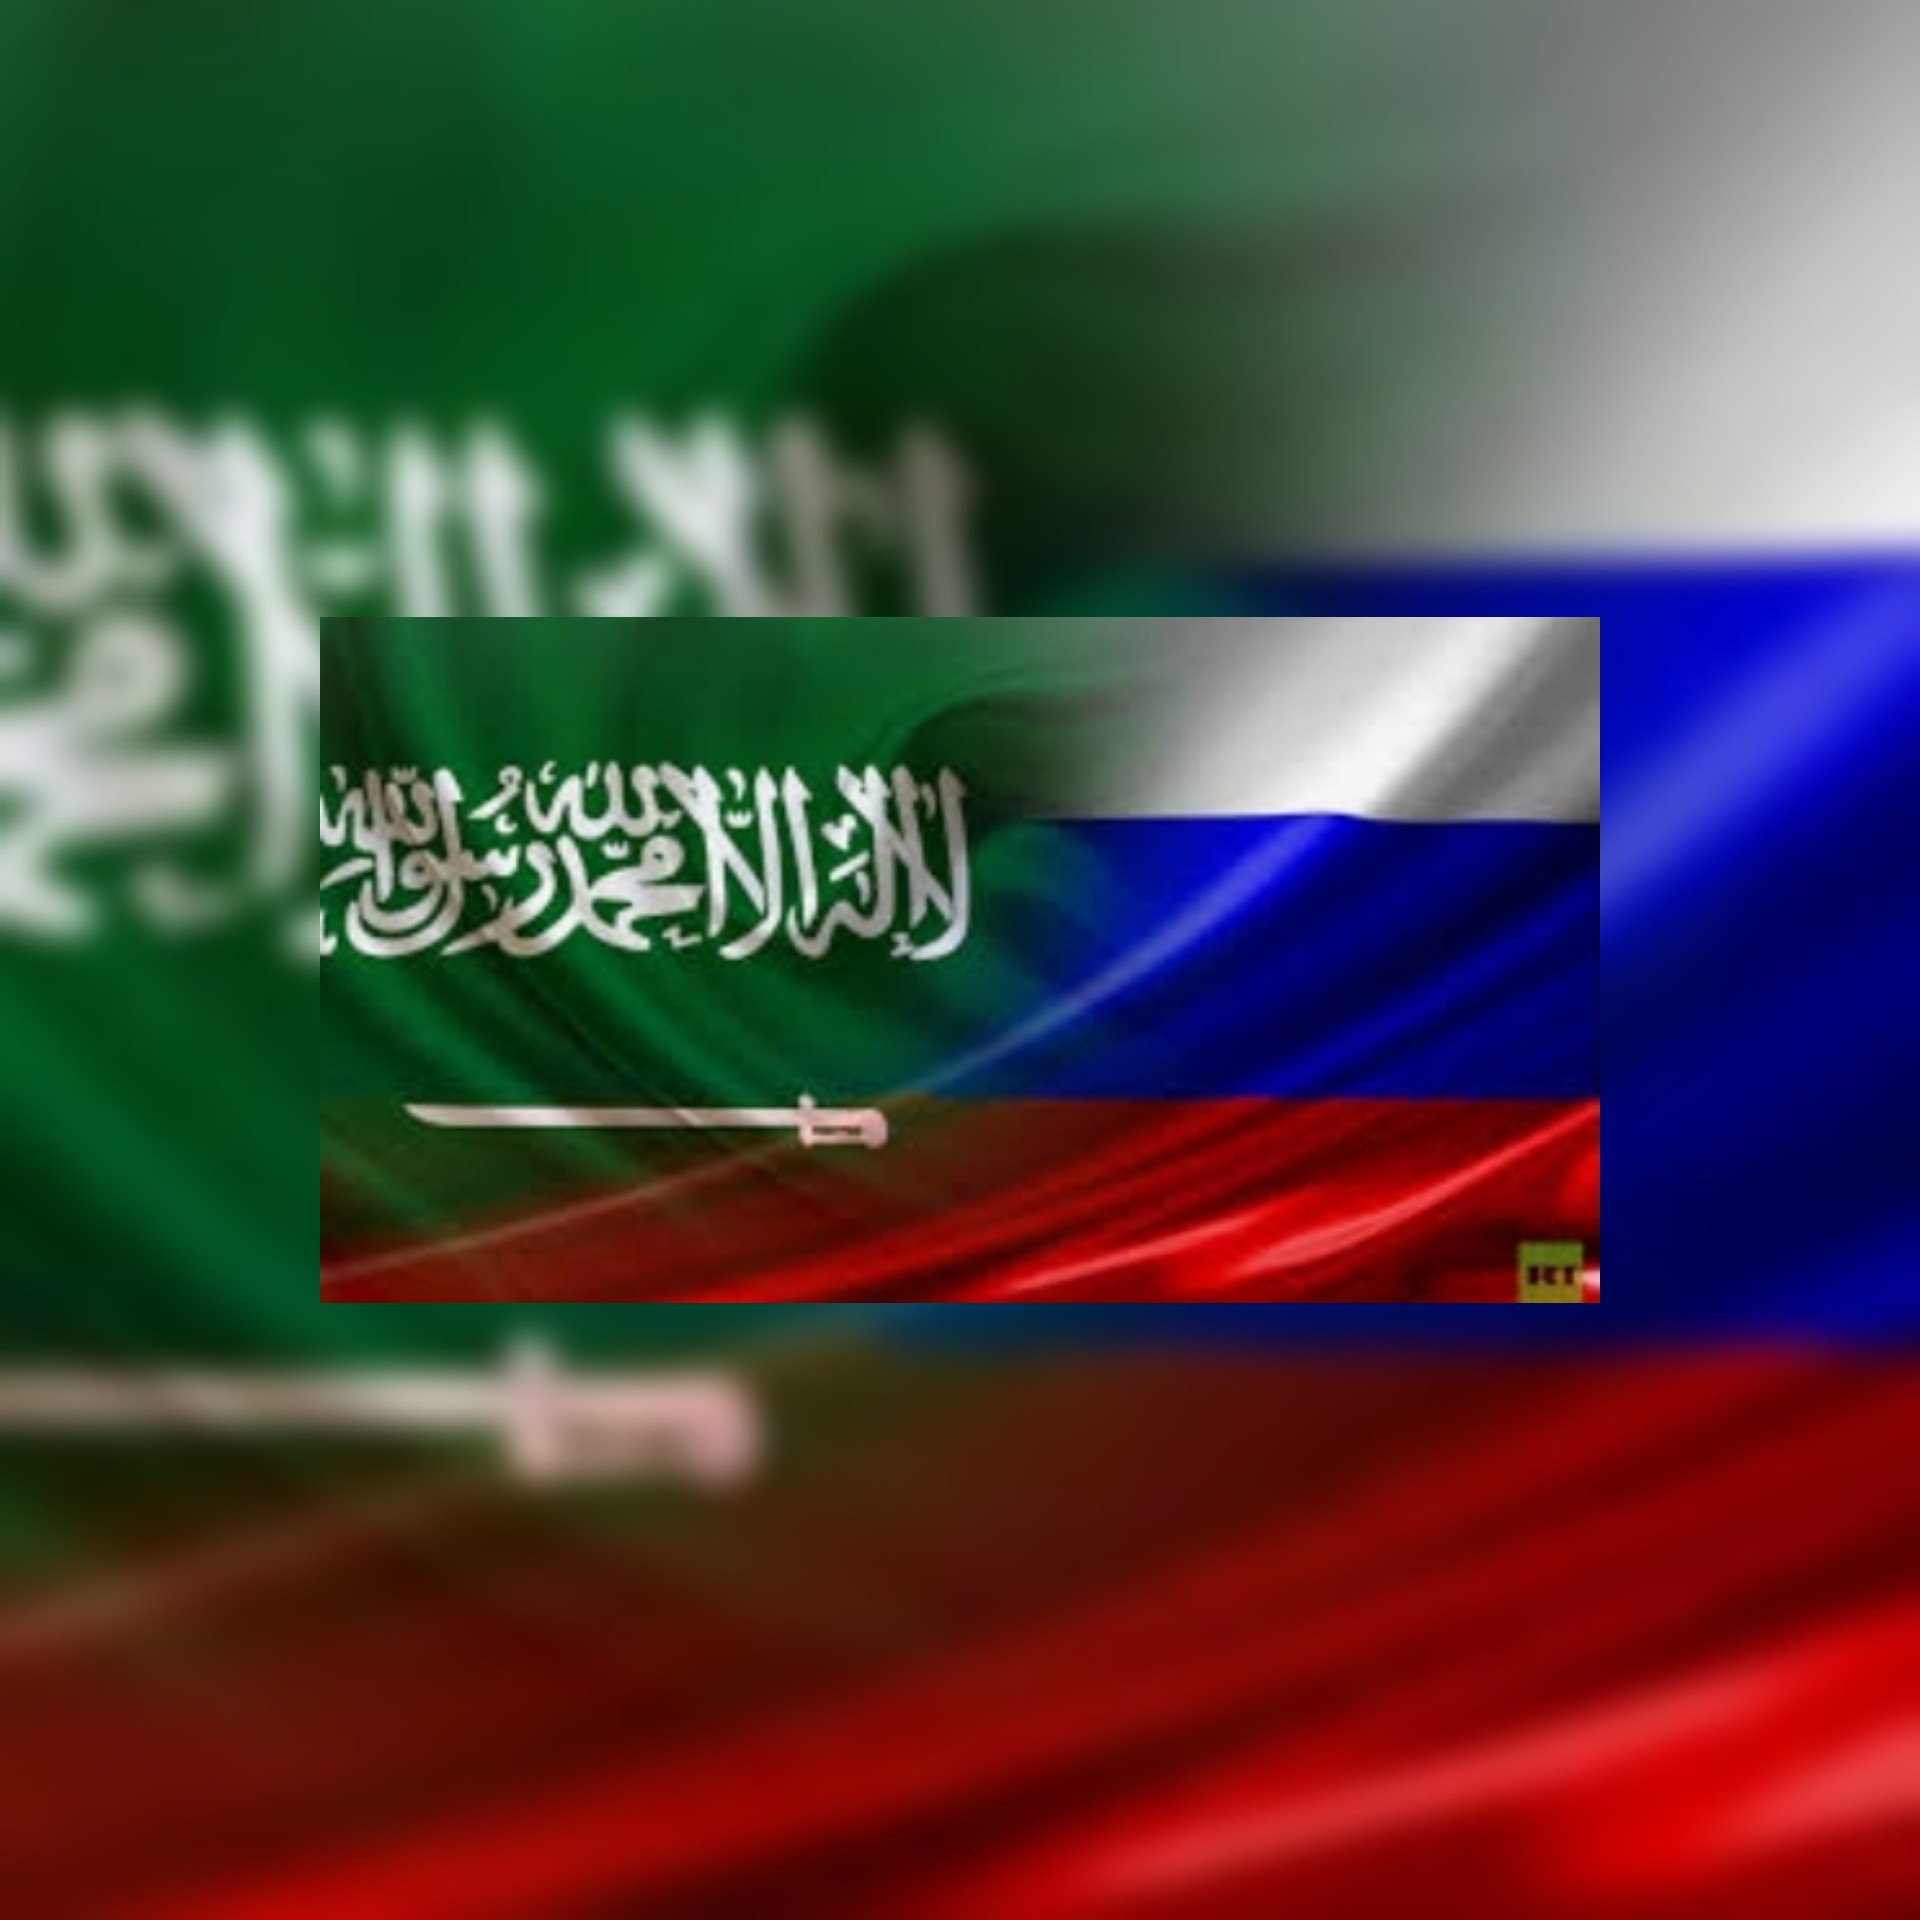 اتفاقيات سعودية روسية عسكريا و الأمير خالد بن سلمان التقى سيرغي شويغو